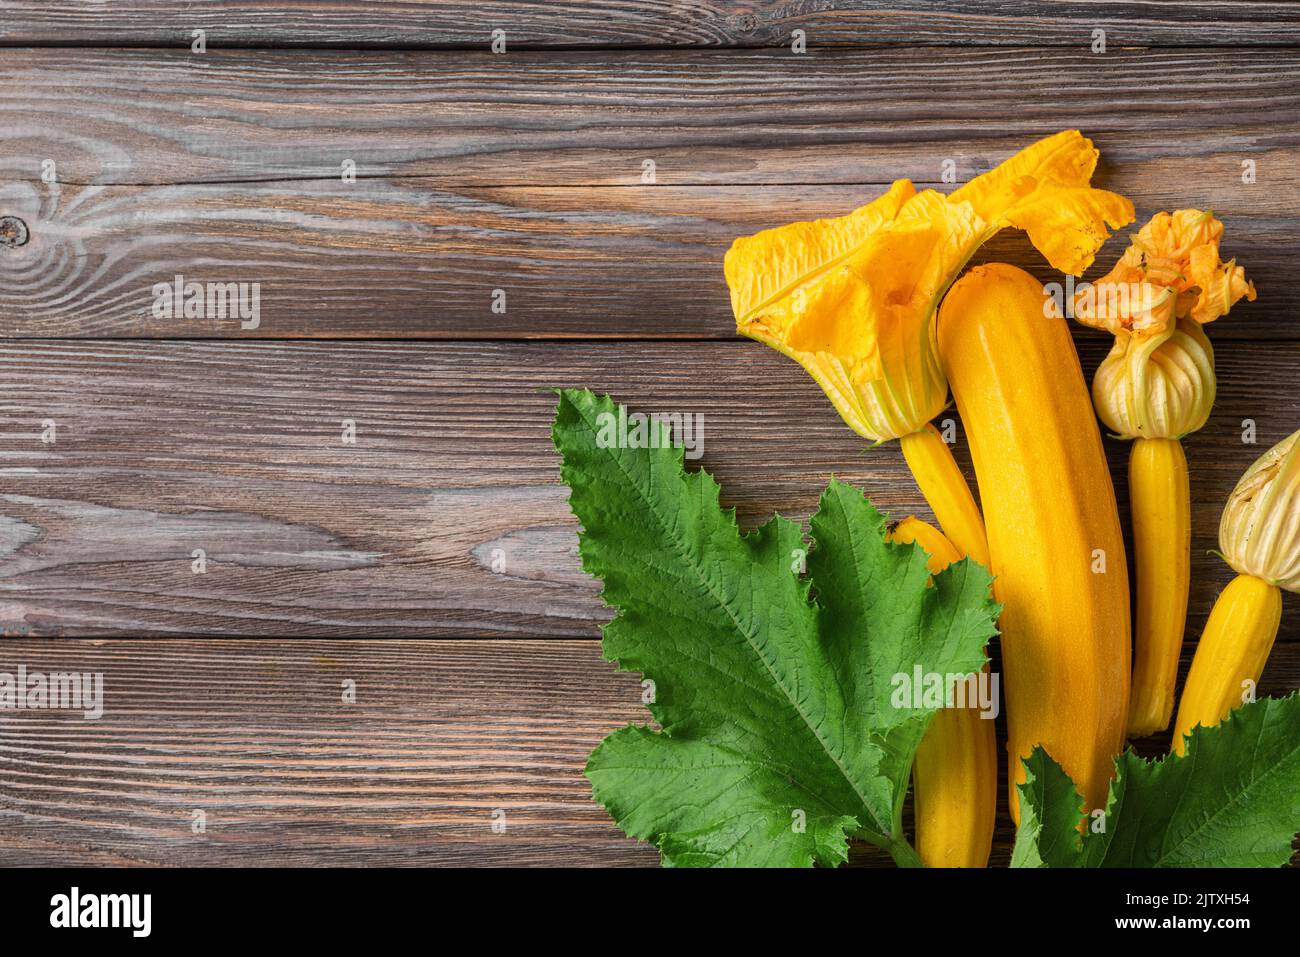 Zucchine fresche gialle o zucca con fiori su fondo in legno. Vista dall'alto con spazio di copia. Verdure fresche raccolte Foto Stock